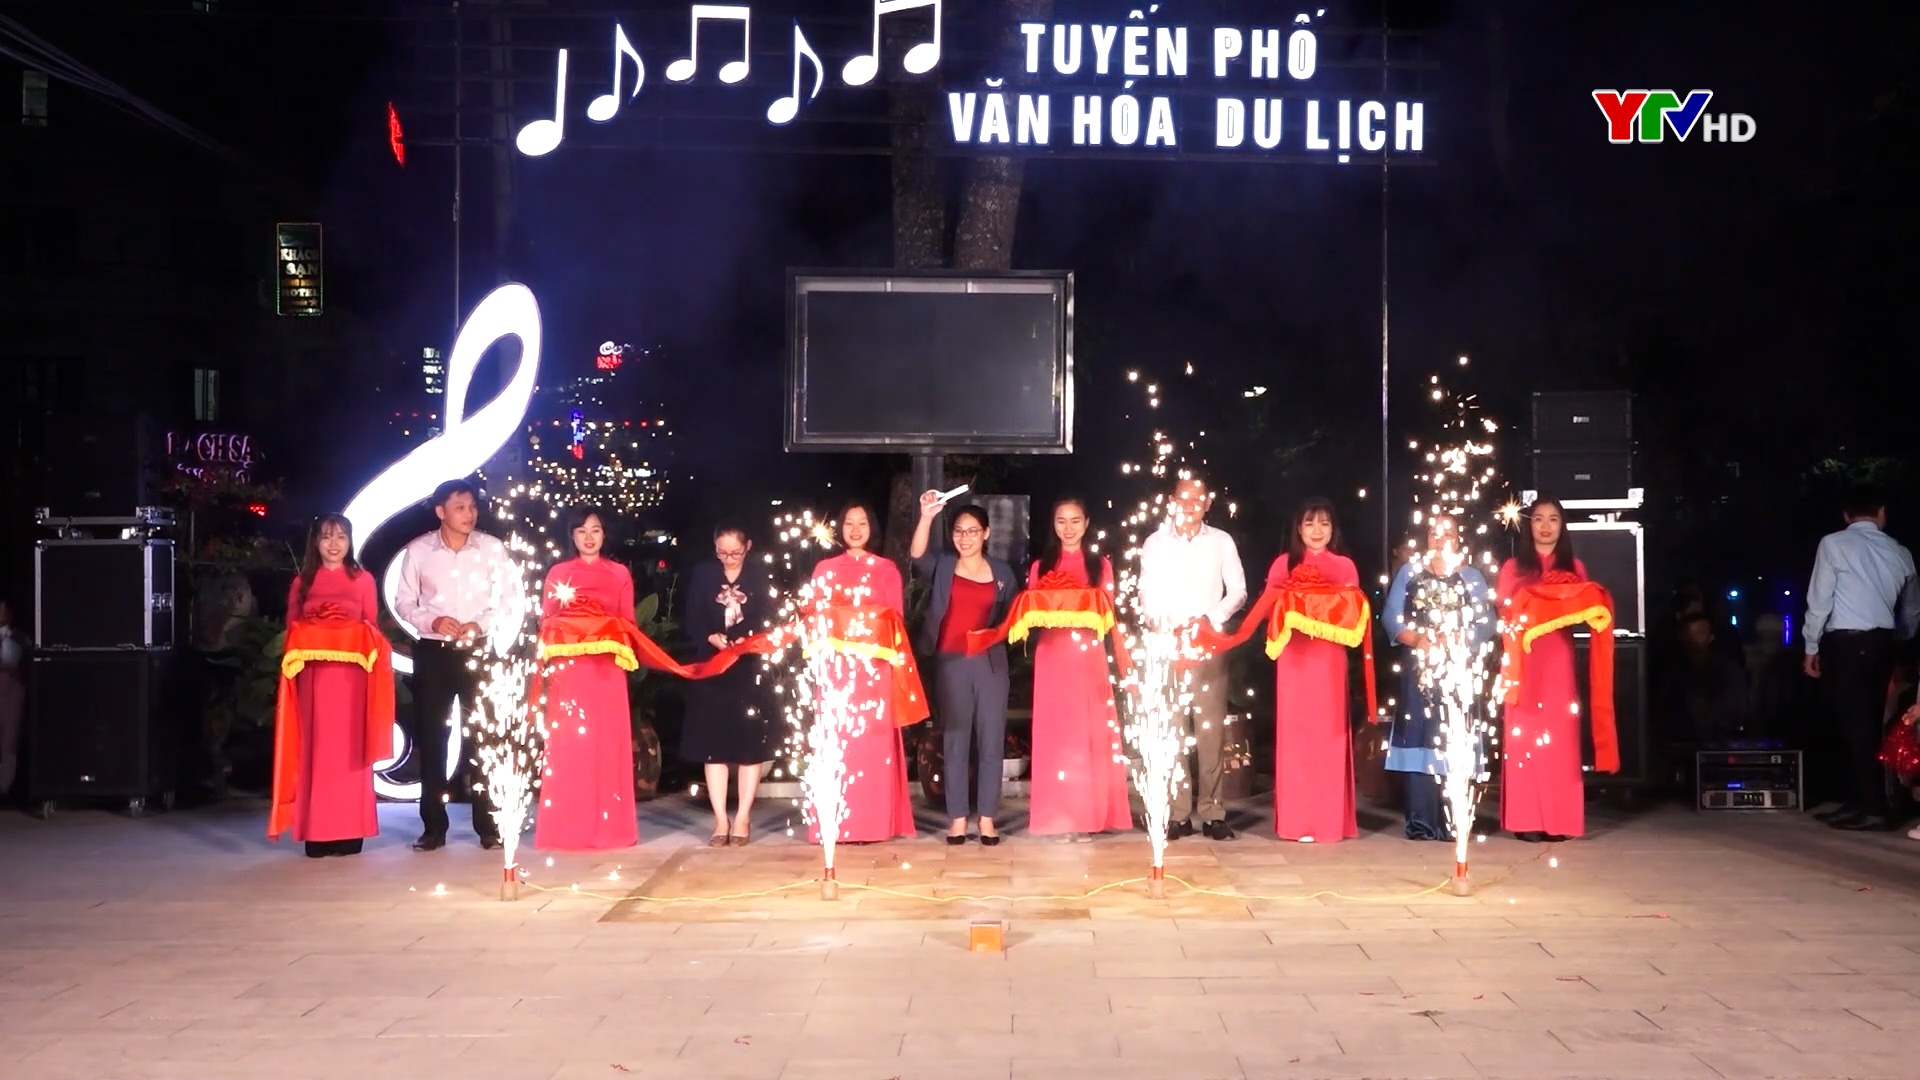 Thị trấn Yên Thế, huyện Lục Yên vừa ra mắt tuyến phố Văn hóa Du lịch